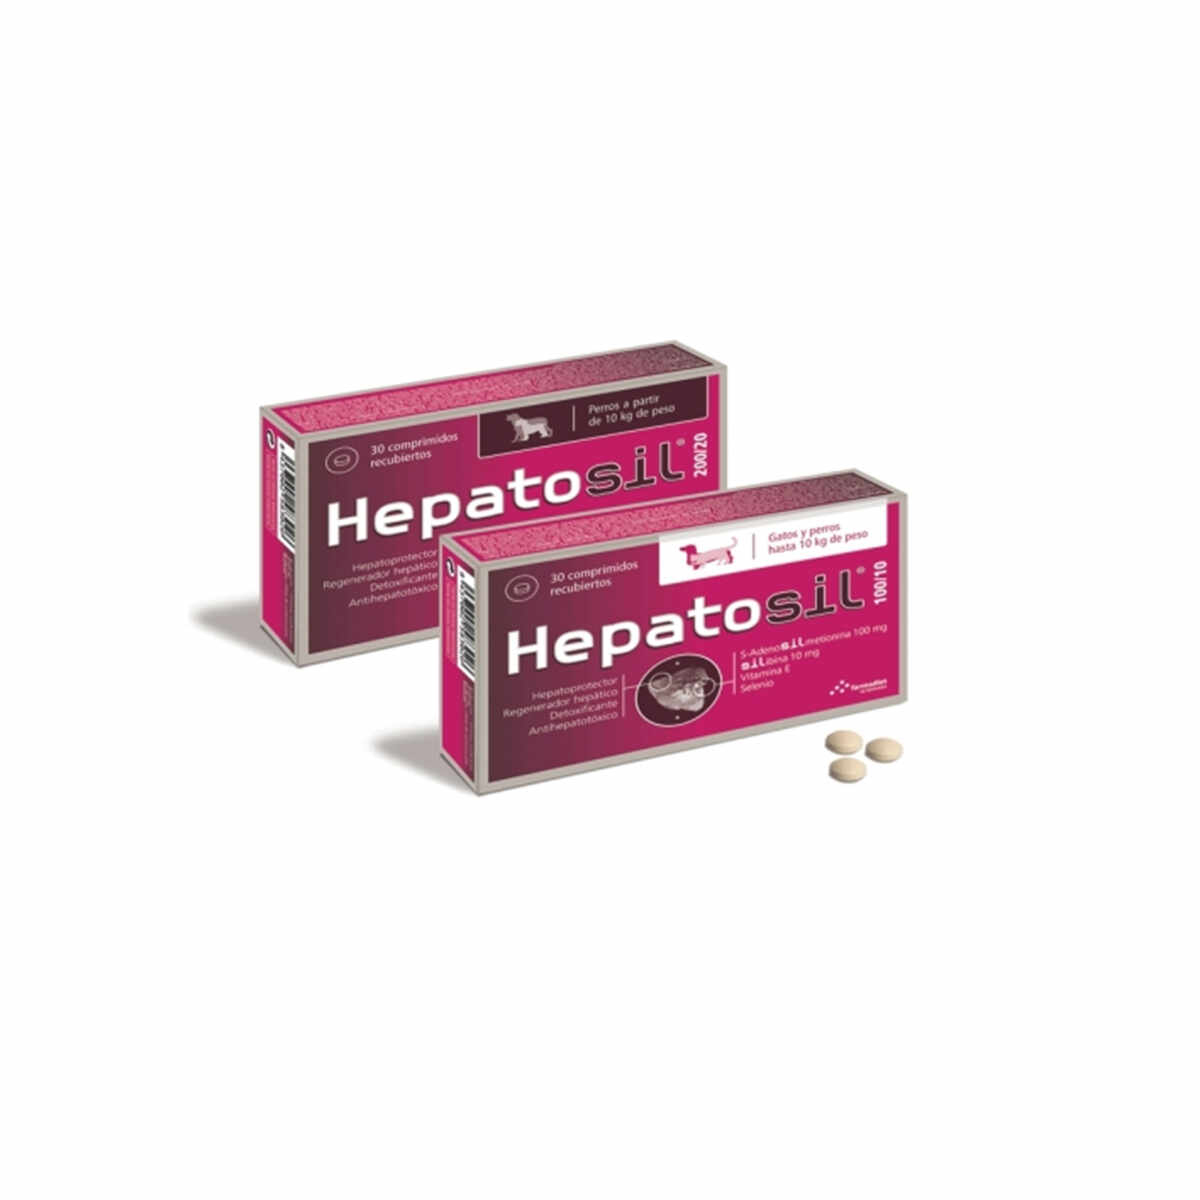 Hepatosil 200/20 x 30 tablete